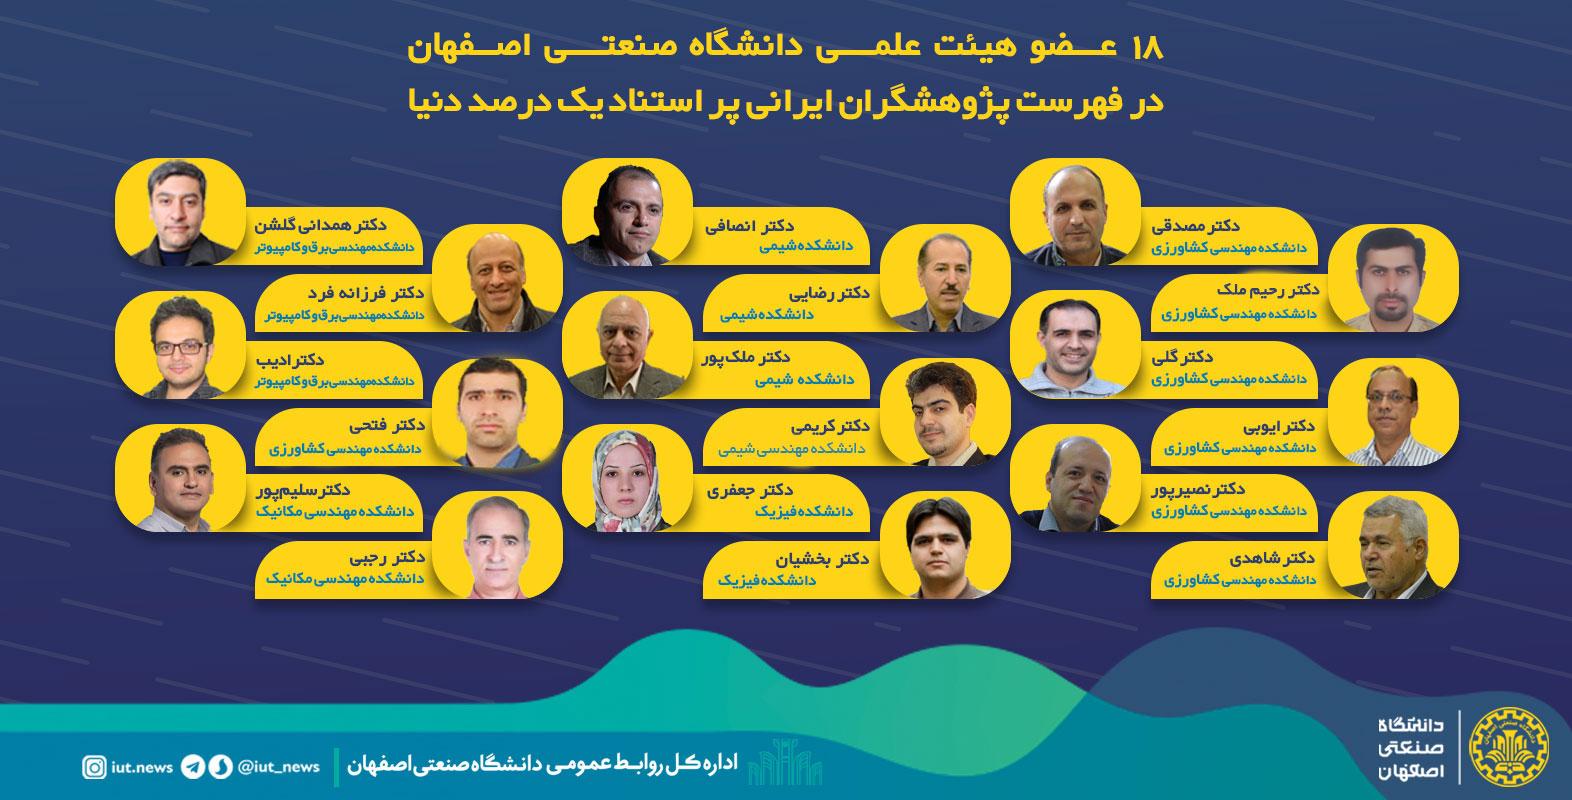 ۱۸عضو هیئت علمی دانشگاه صنعتی اصفهان در فهرست پژوهشگران ایرانی پر استناد یک درصد دنیا